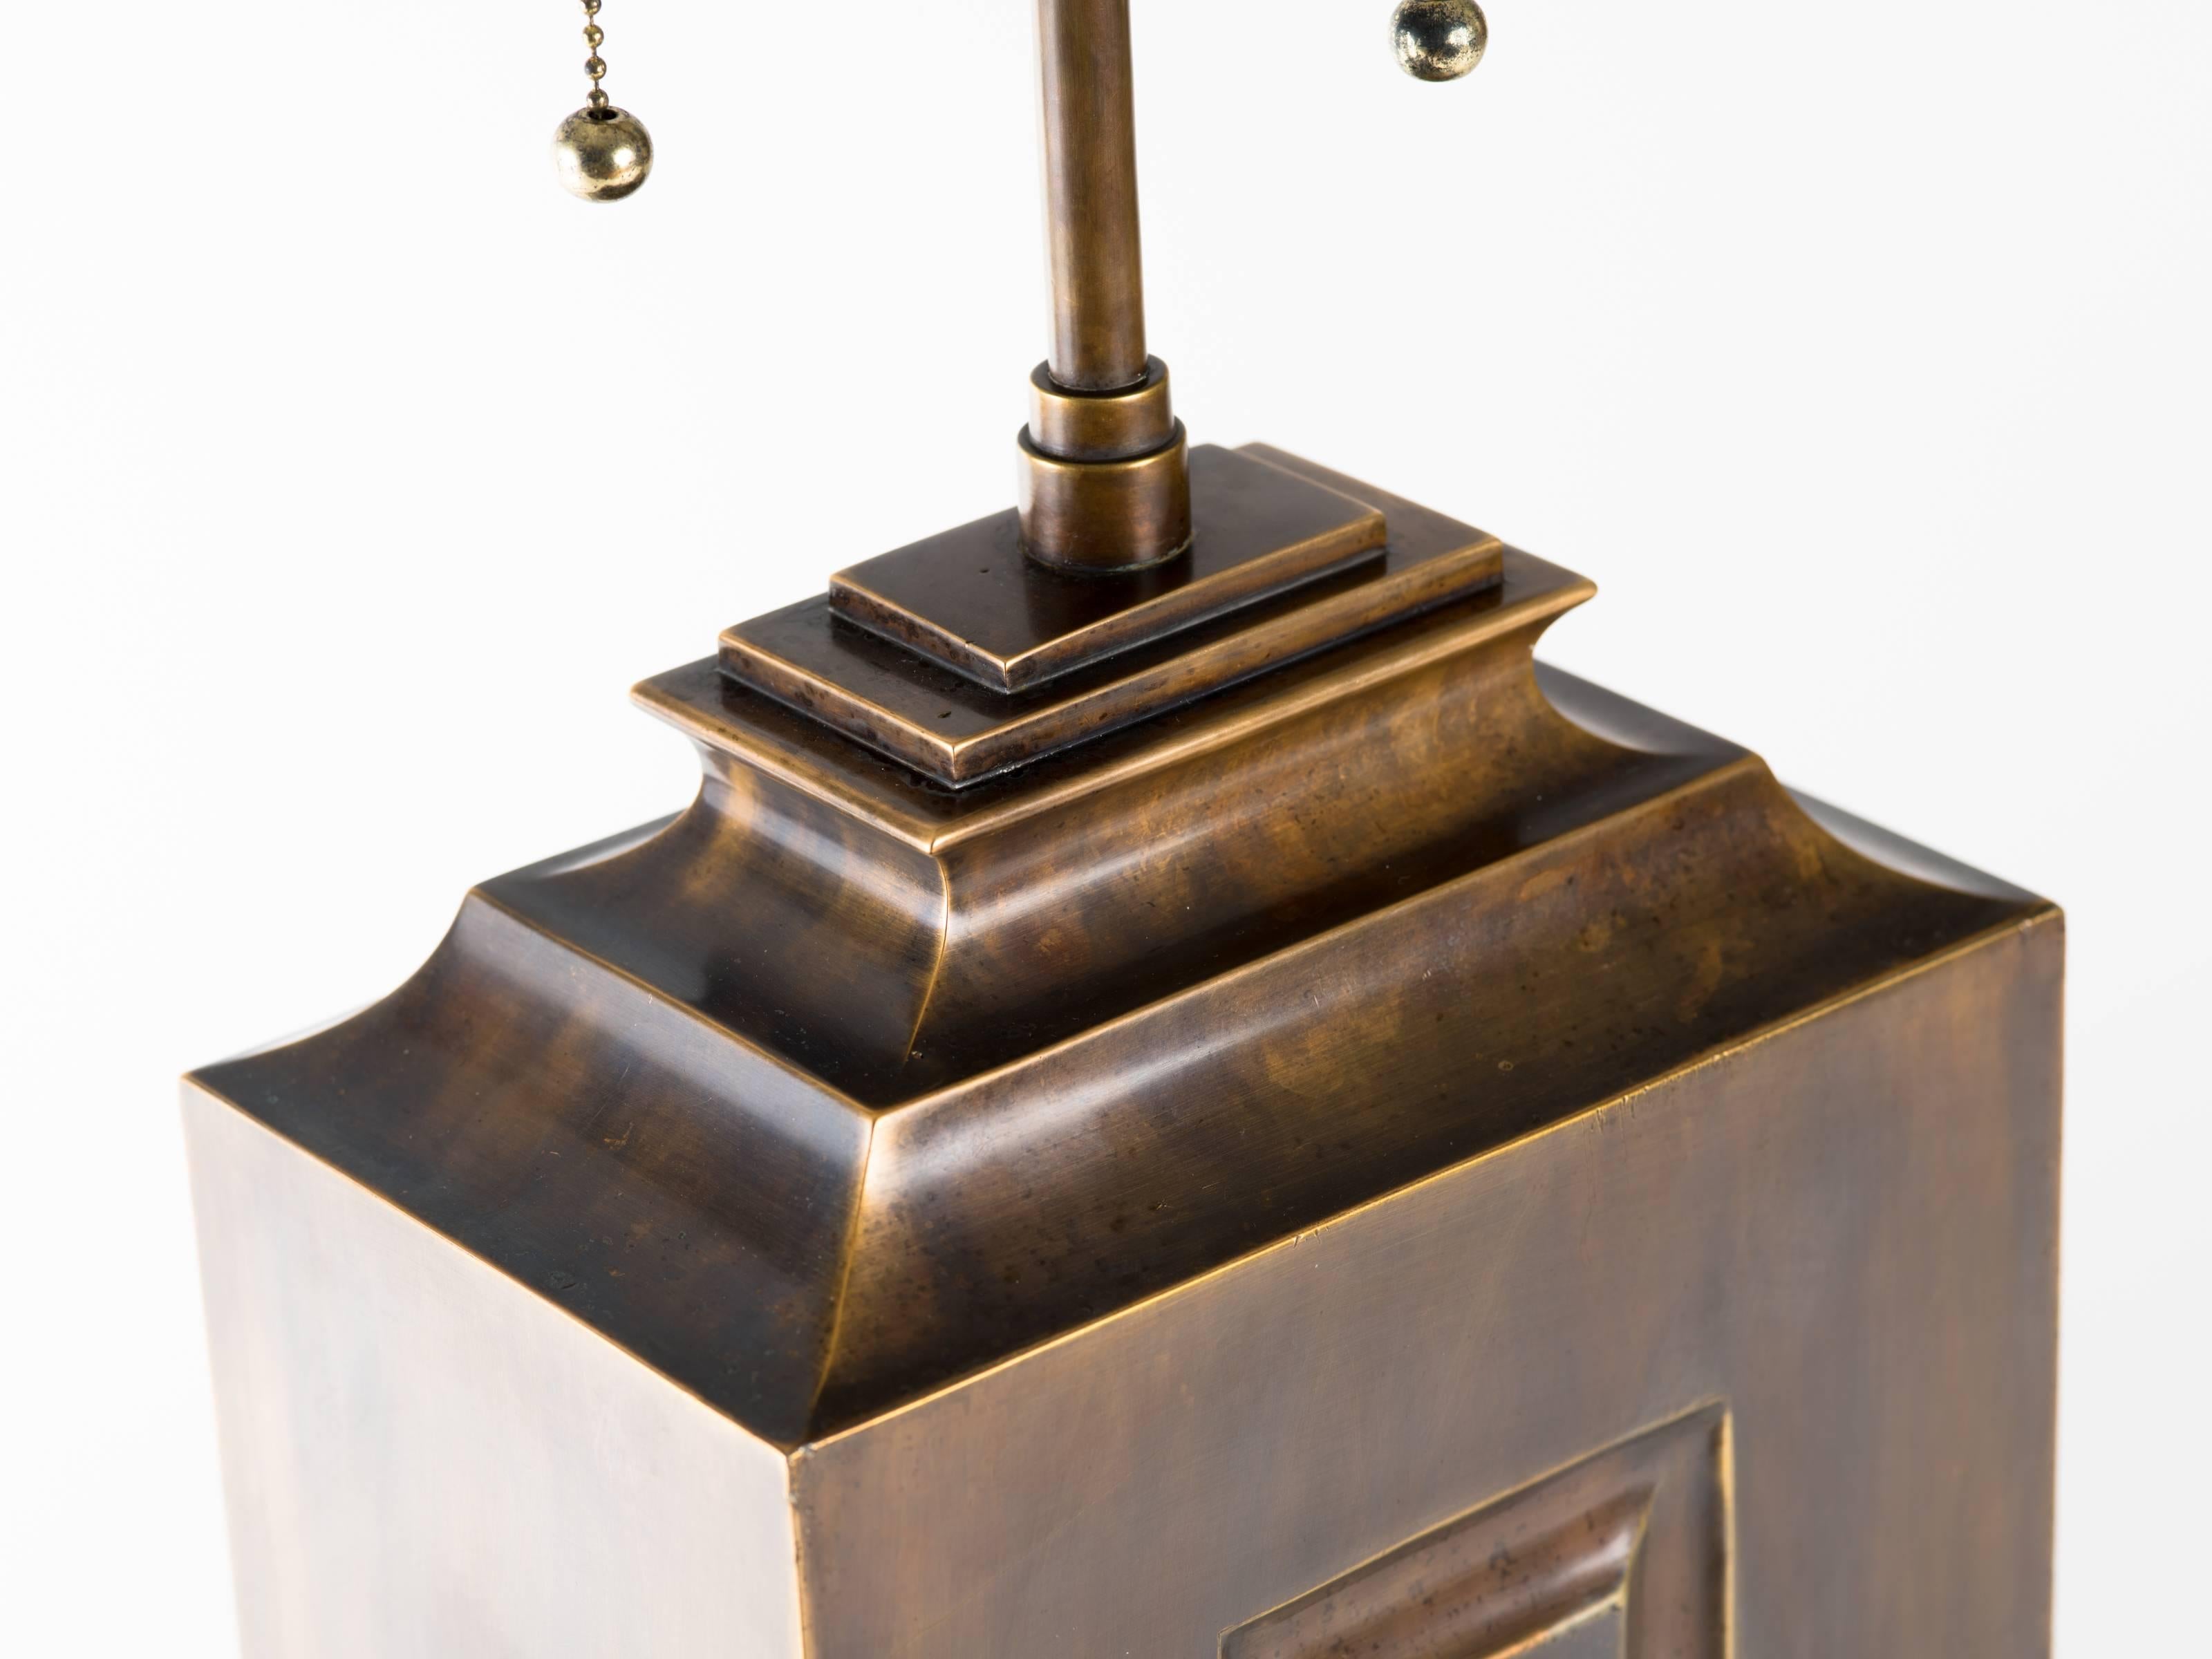 Monumentale Hollywood-Regency-Lampe aus patiniertem Messing. Der Lampenkörper ist 24,5